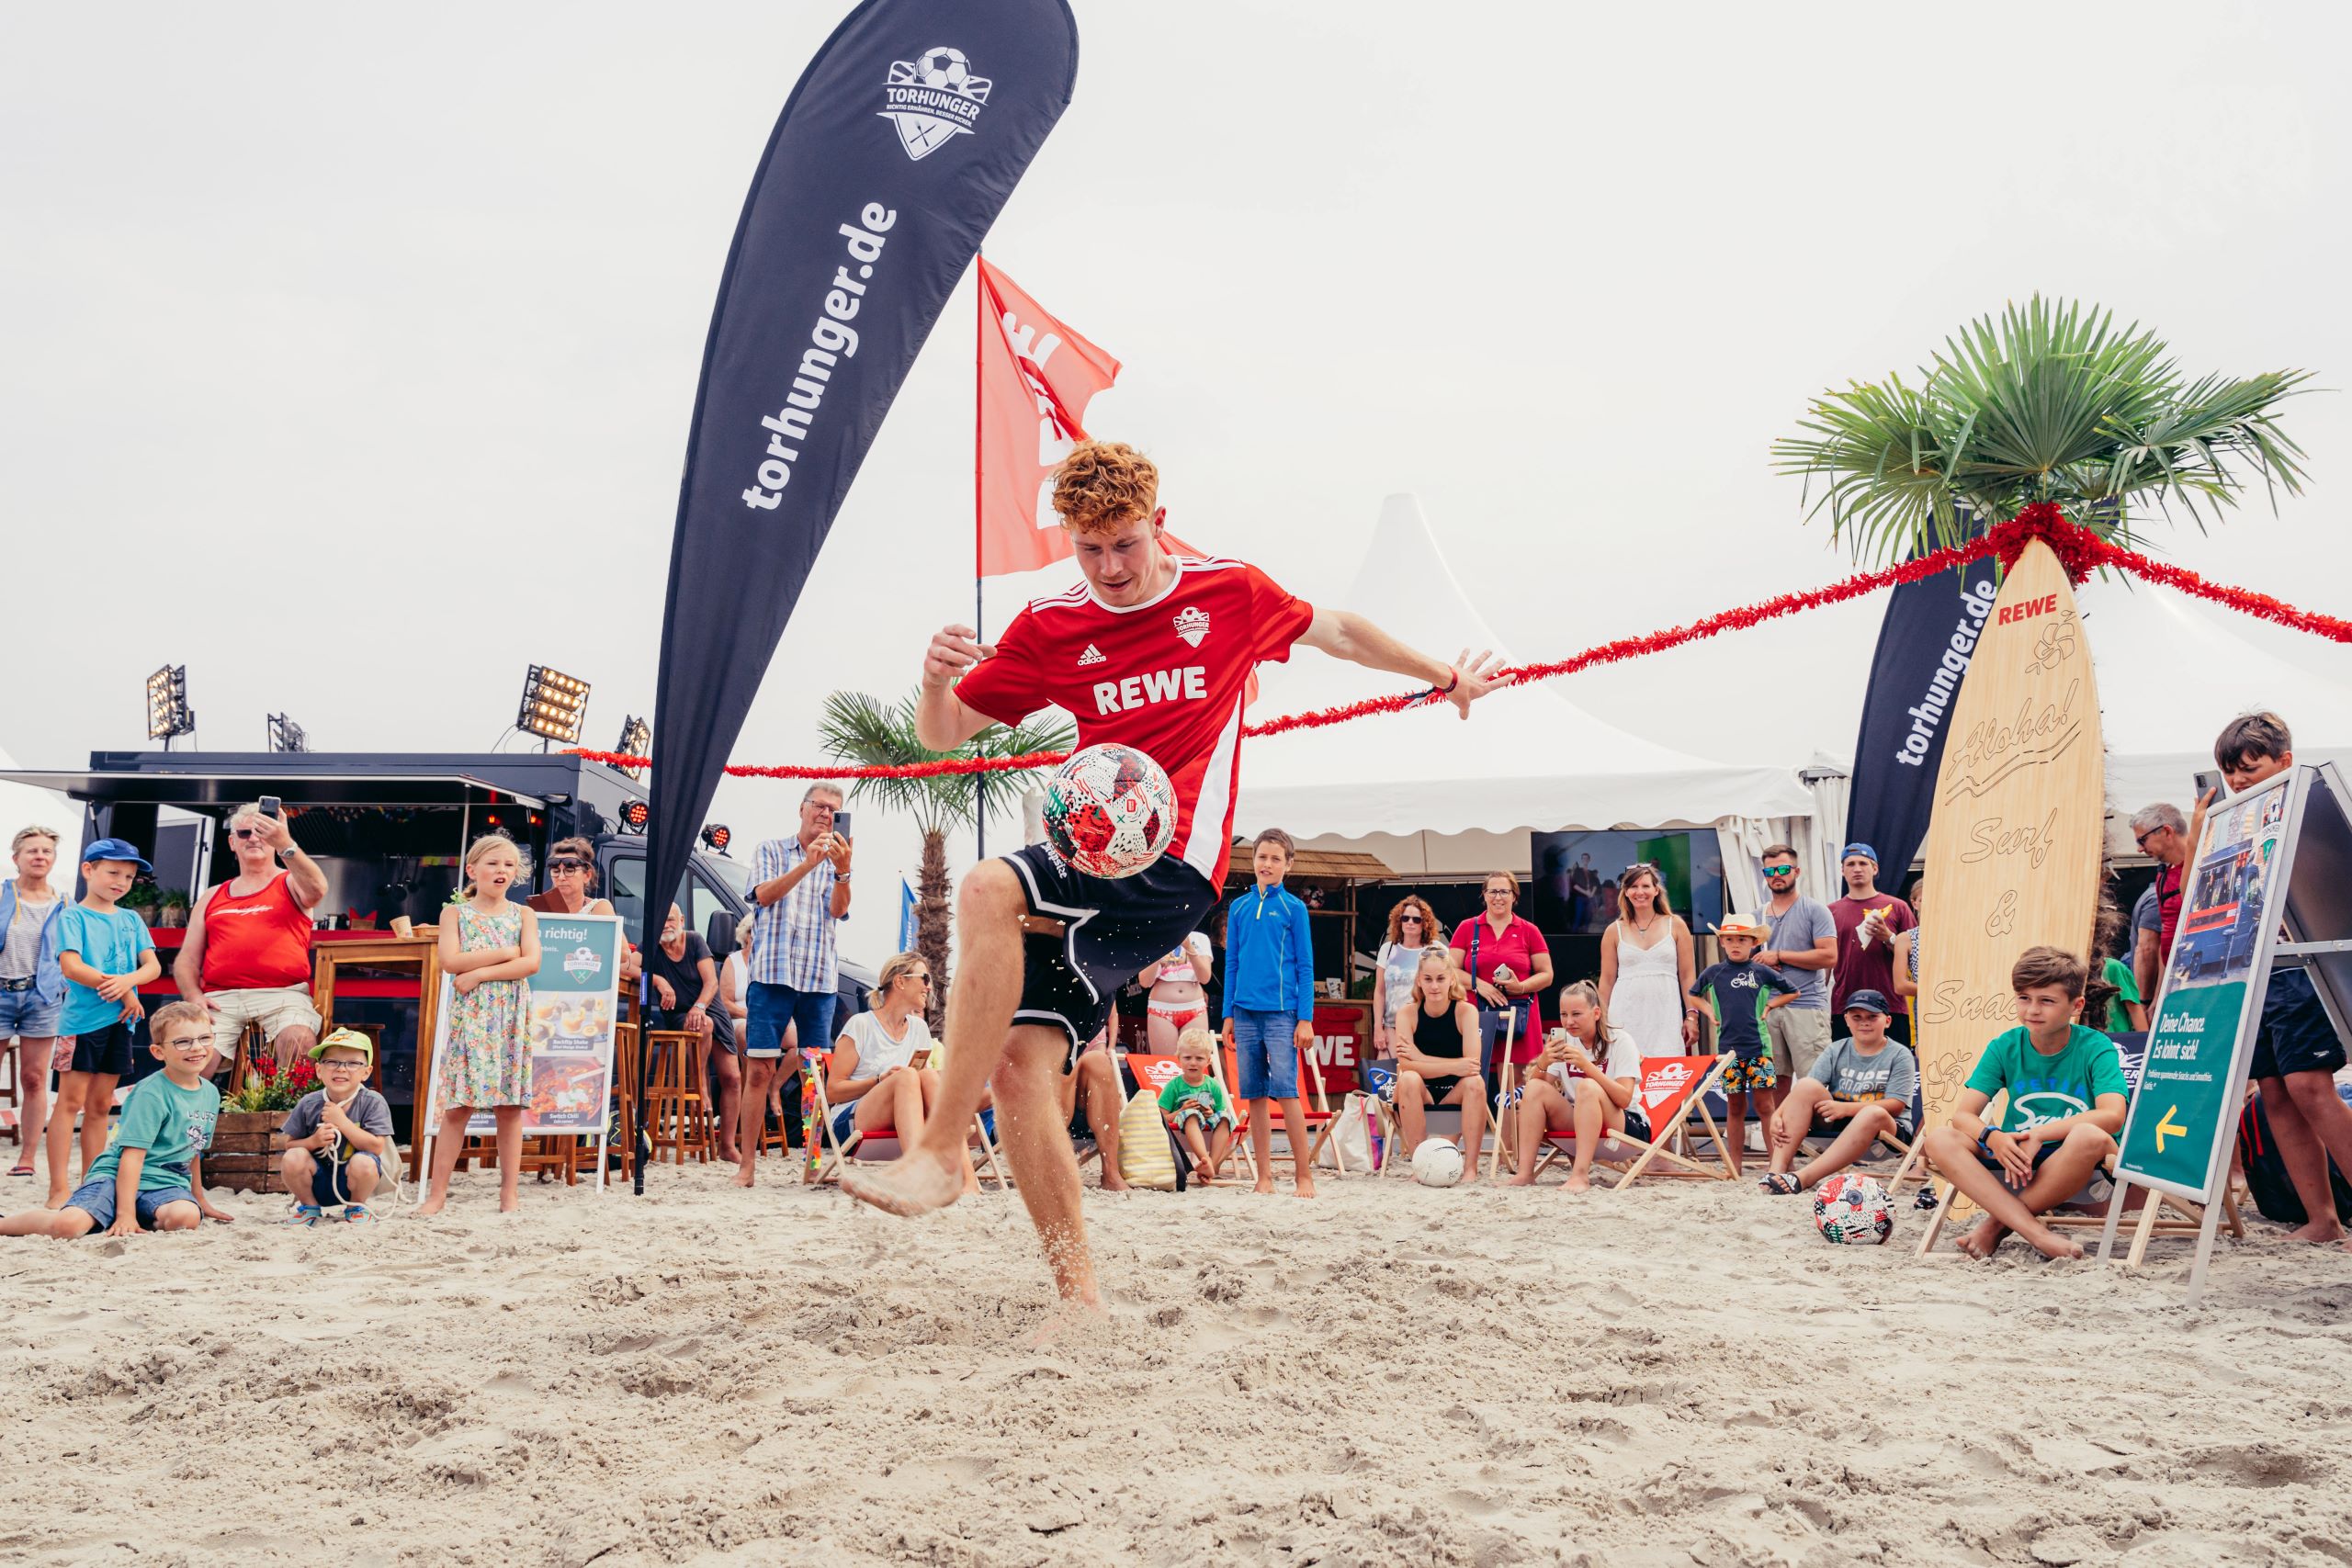 Fussballspieler mit REWE Trikot an einem Strand mit der Torhunger-Aktionsflagge vor einem Publikum